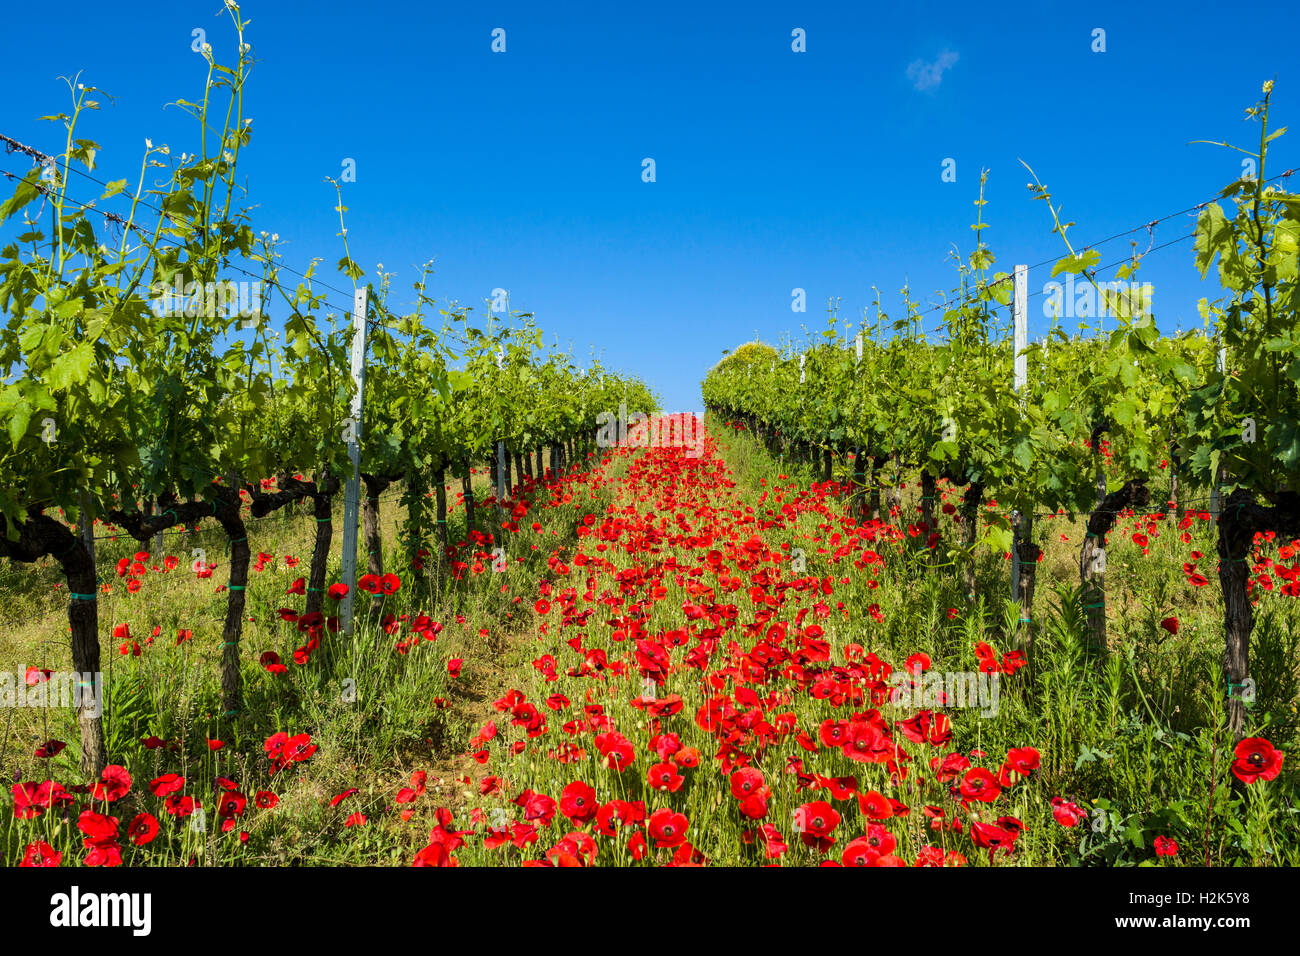 Typische grüne toskanische Landschaft im Val d ' Orcia mit Weingärten, Mohn und ein blauer Himmel, Ascianello, Toskana, Italien Stockfoto